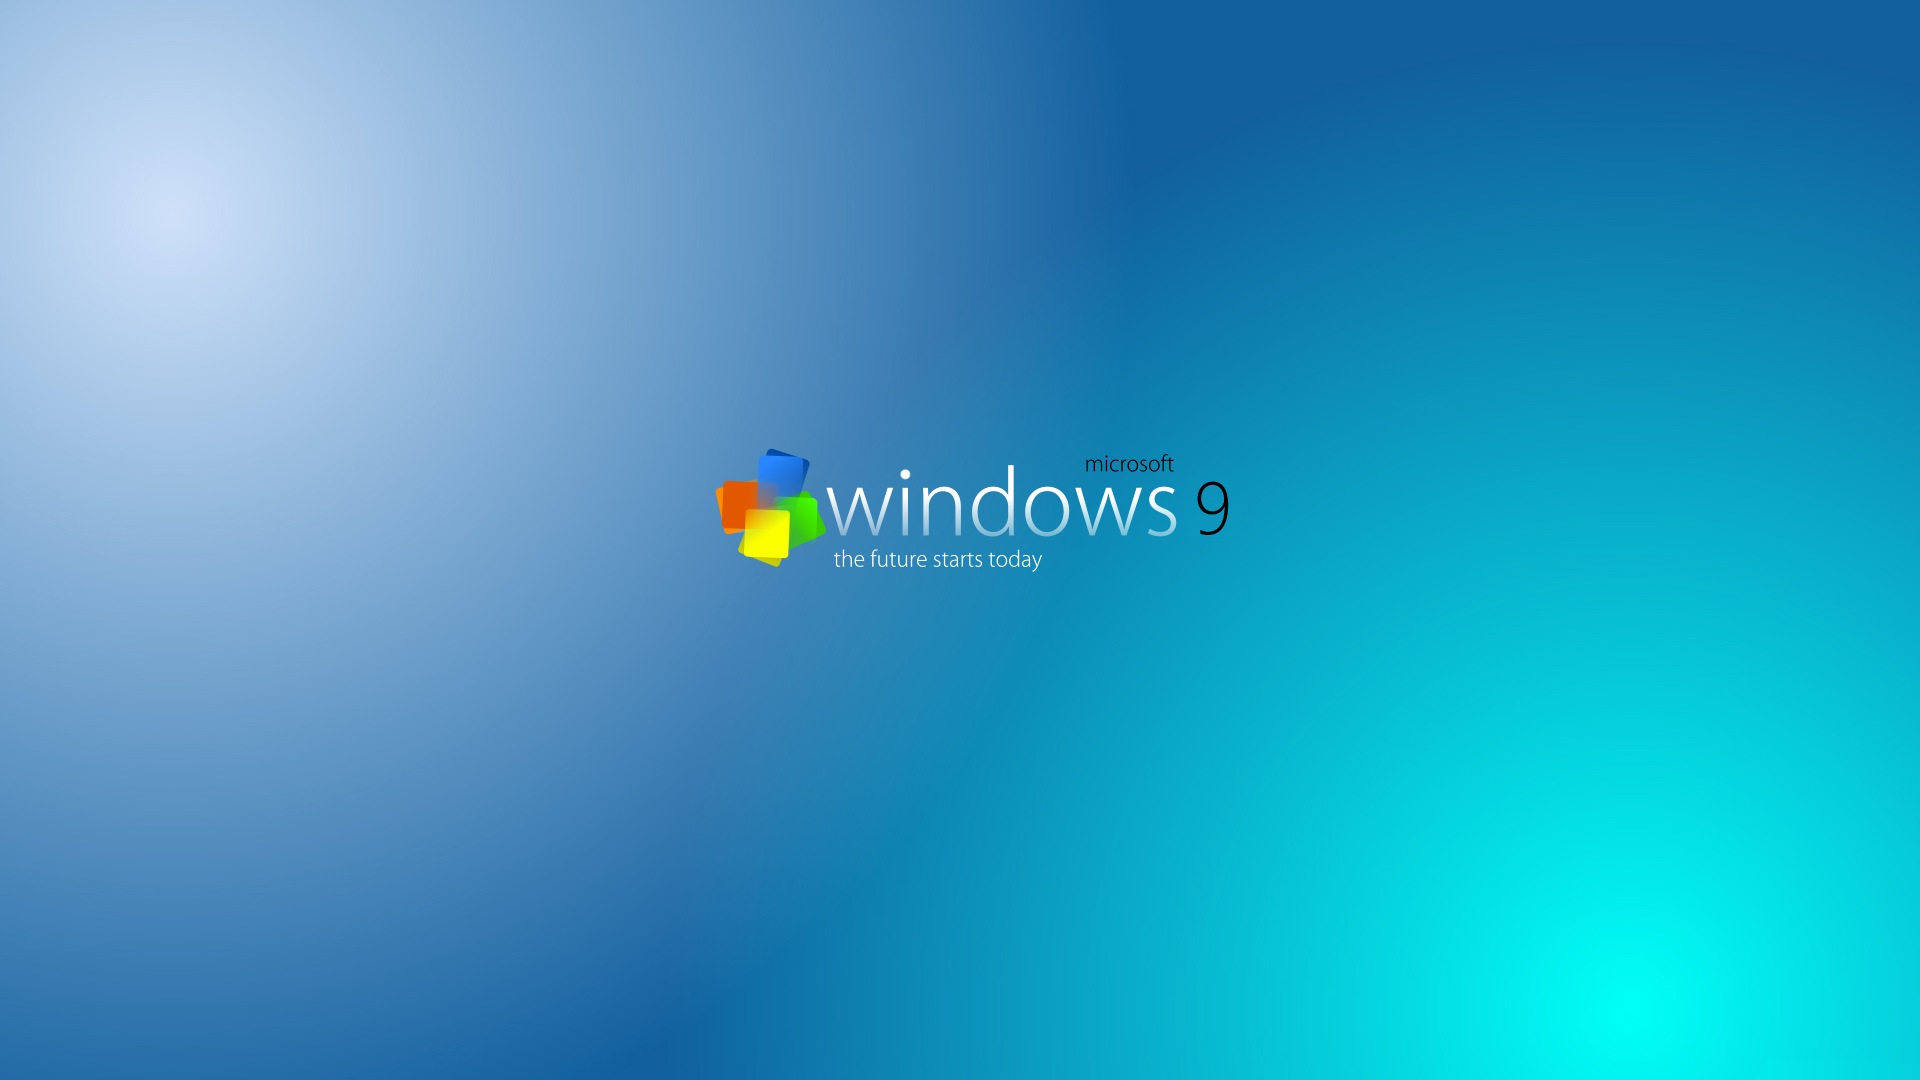 微软 Windows 9 系统主题 高清壁纸16 - 1920x1080